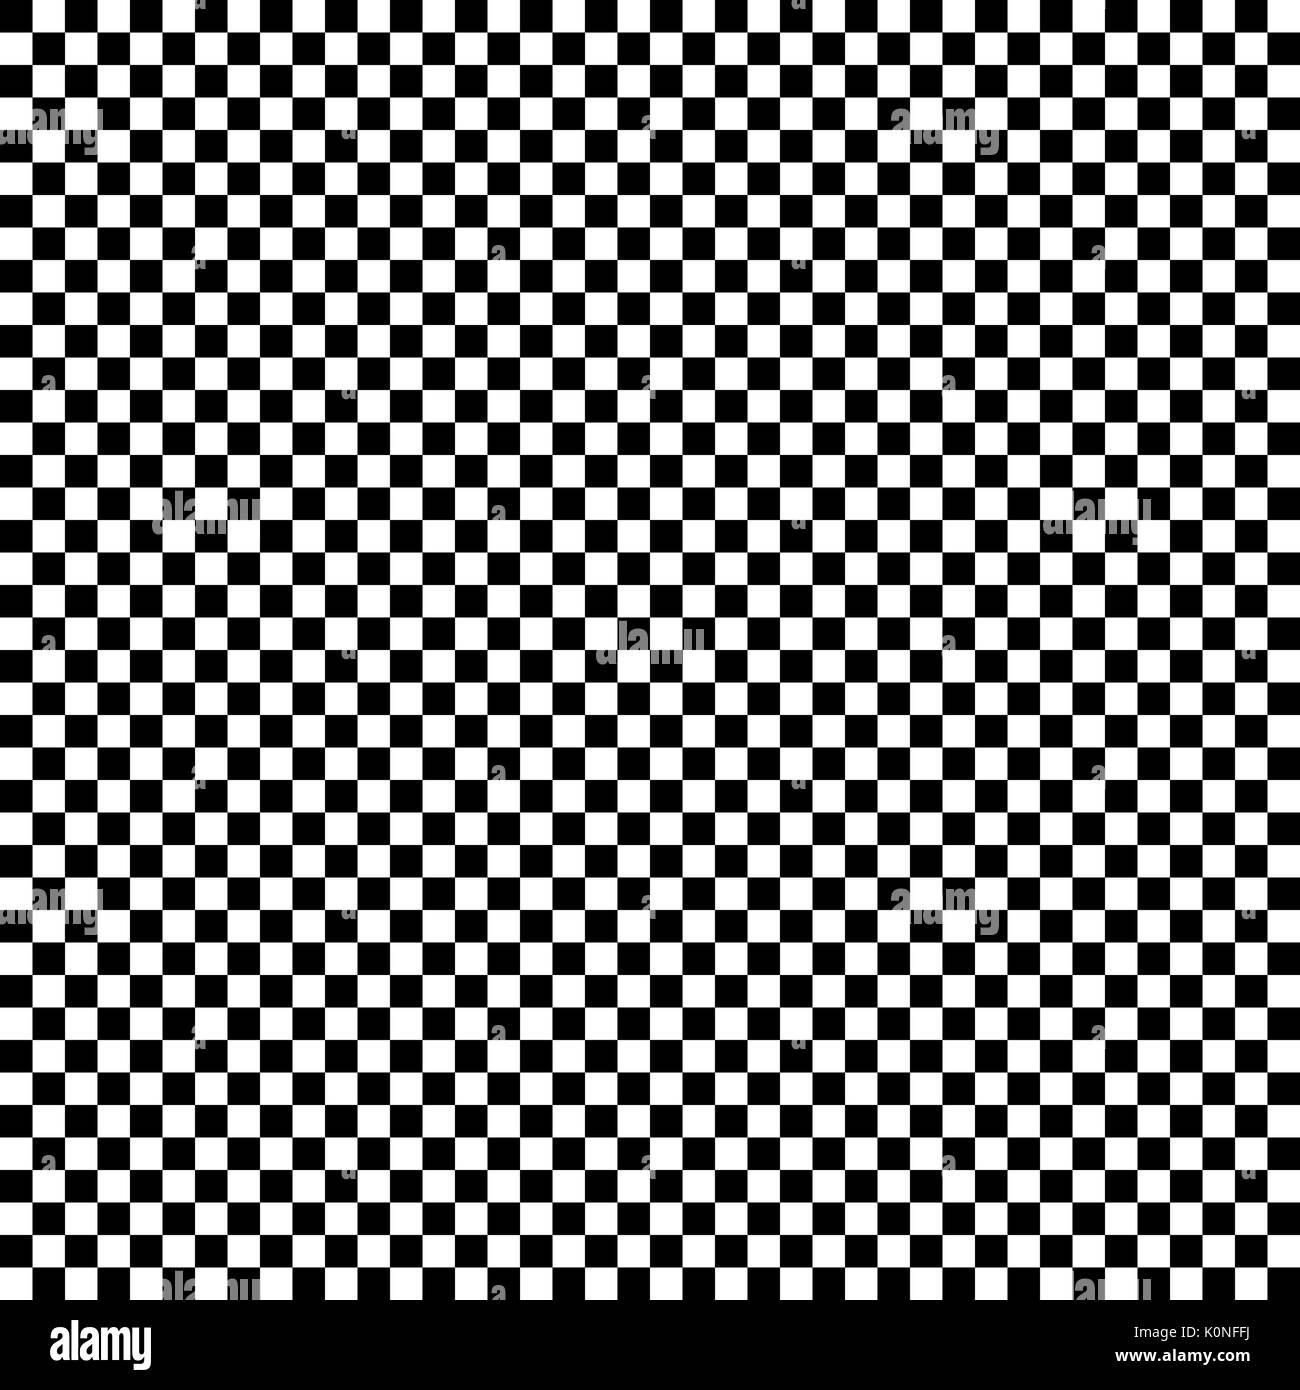 Regelmäßiges Muster aus Quadraten in wechselnden Farben Schwarz und Weiß. Stock Vektor